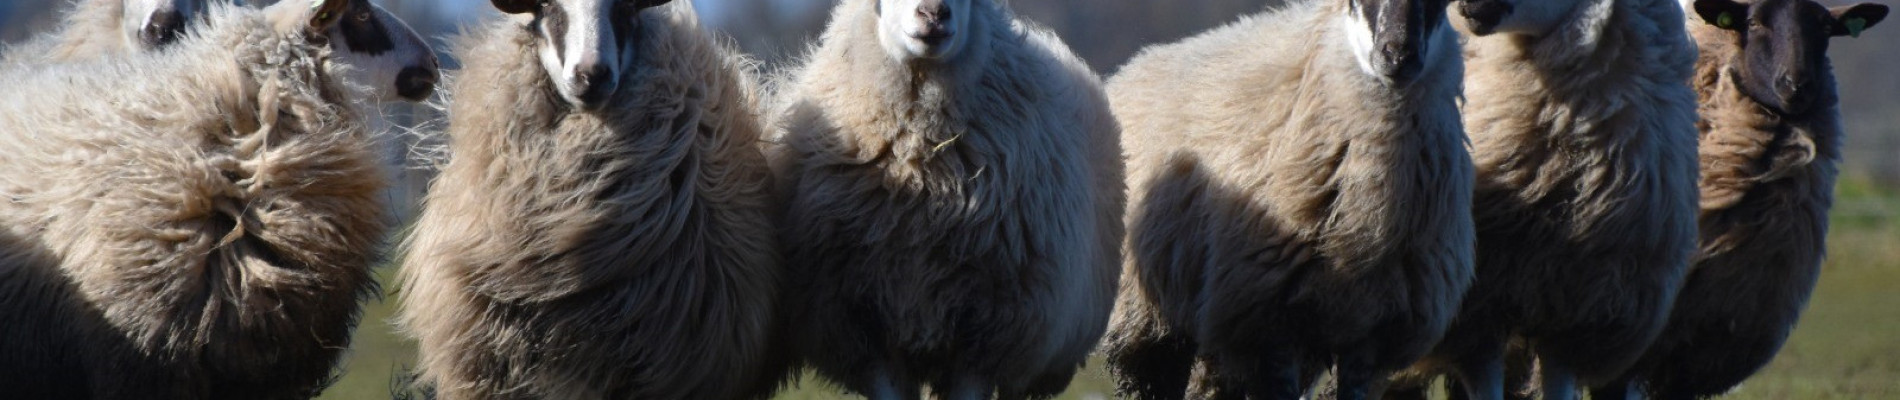 aantal wollige schapen op een rij met een blauwe lucht op de achtergrond